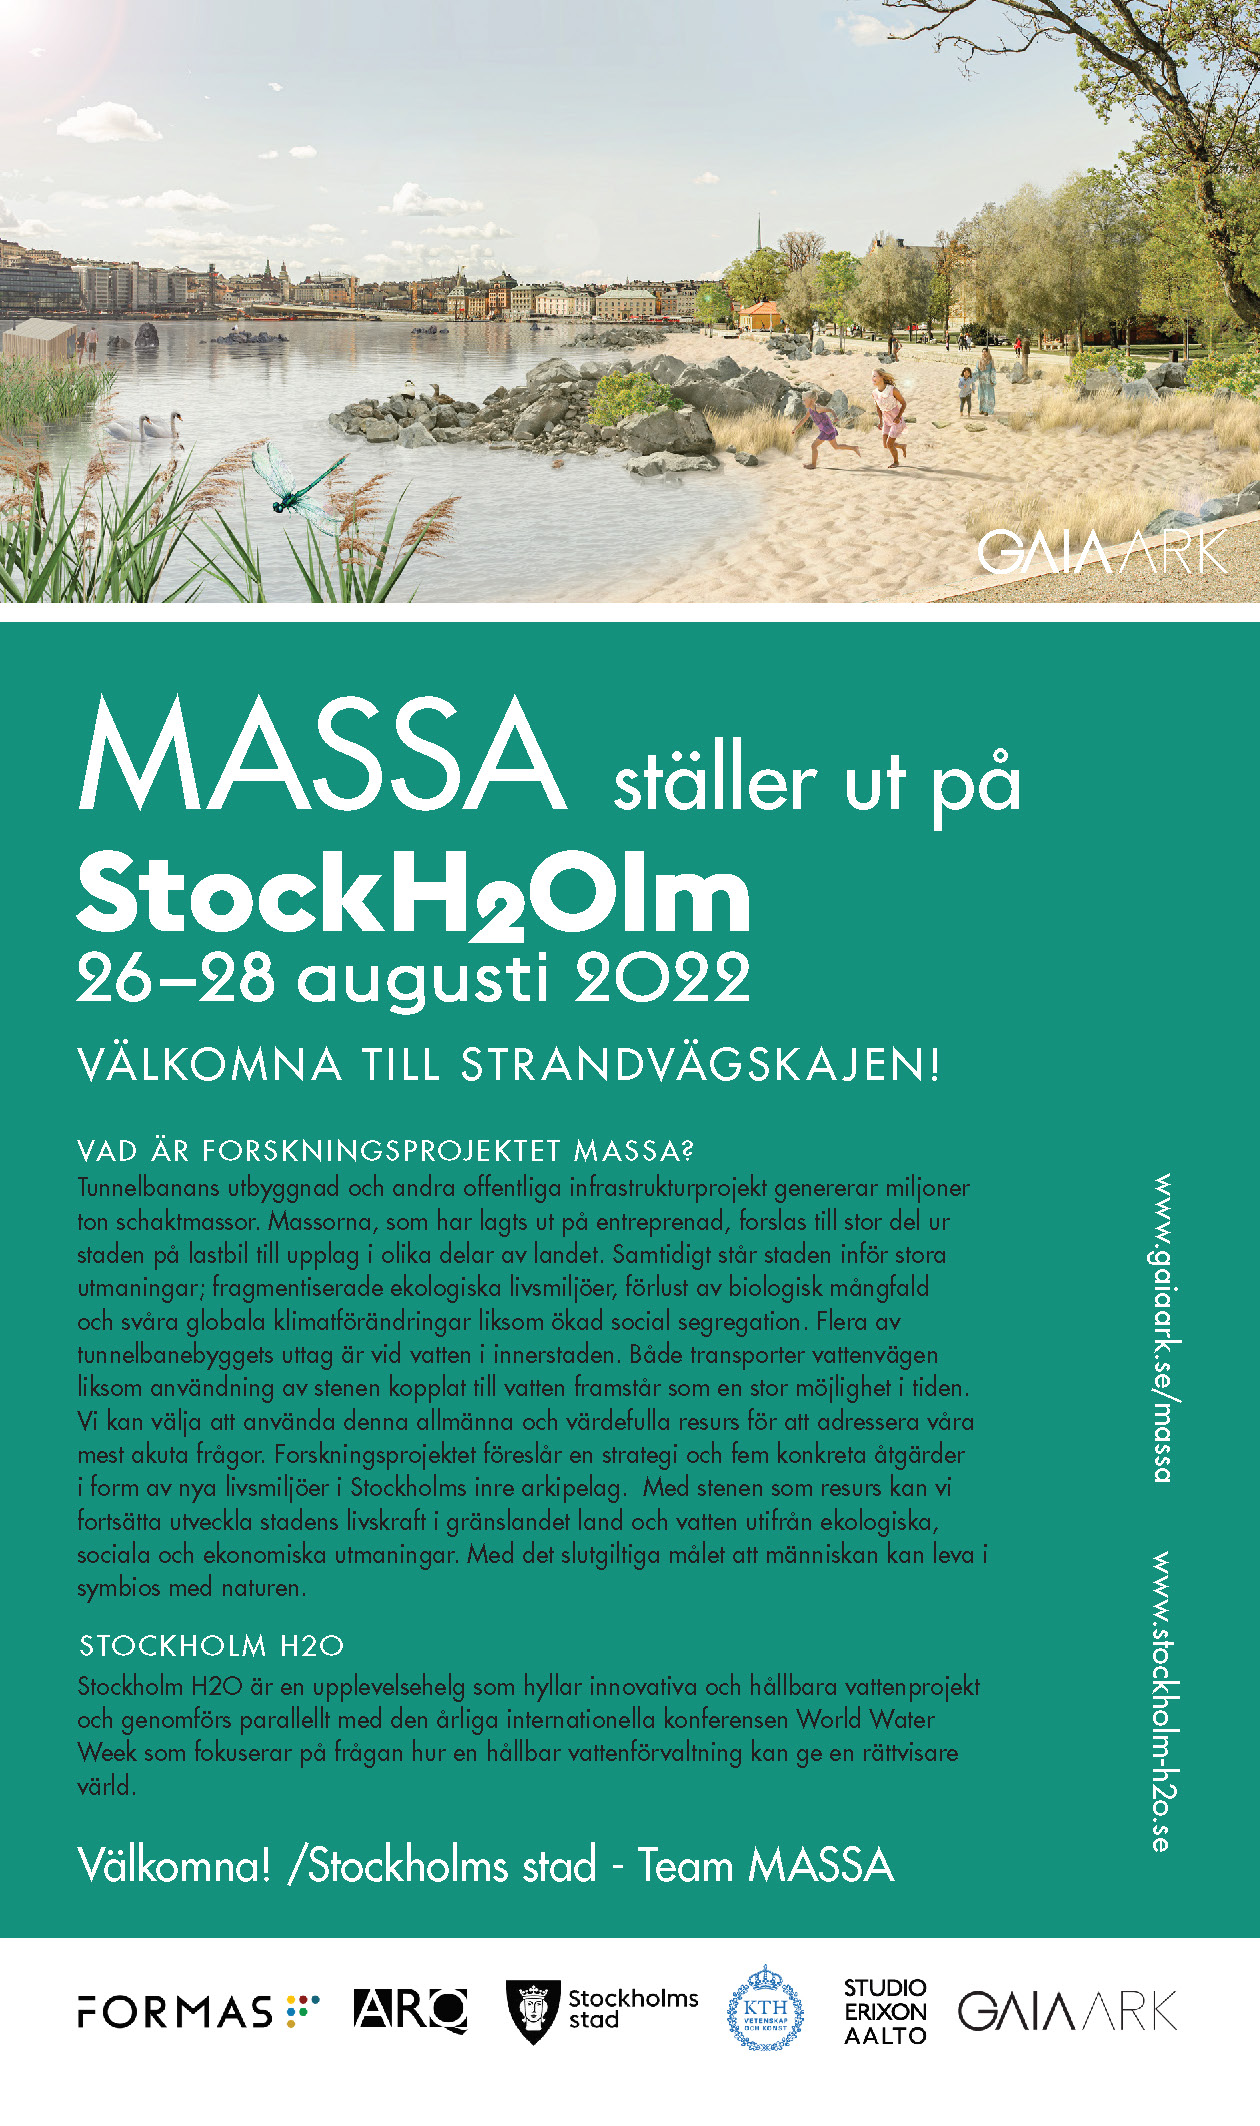 MASSA ställs ut på Stockholm H2O